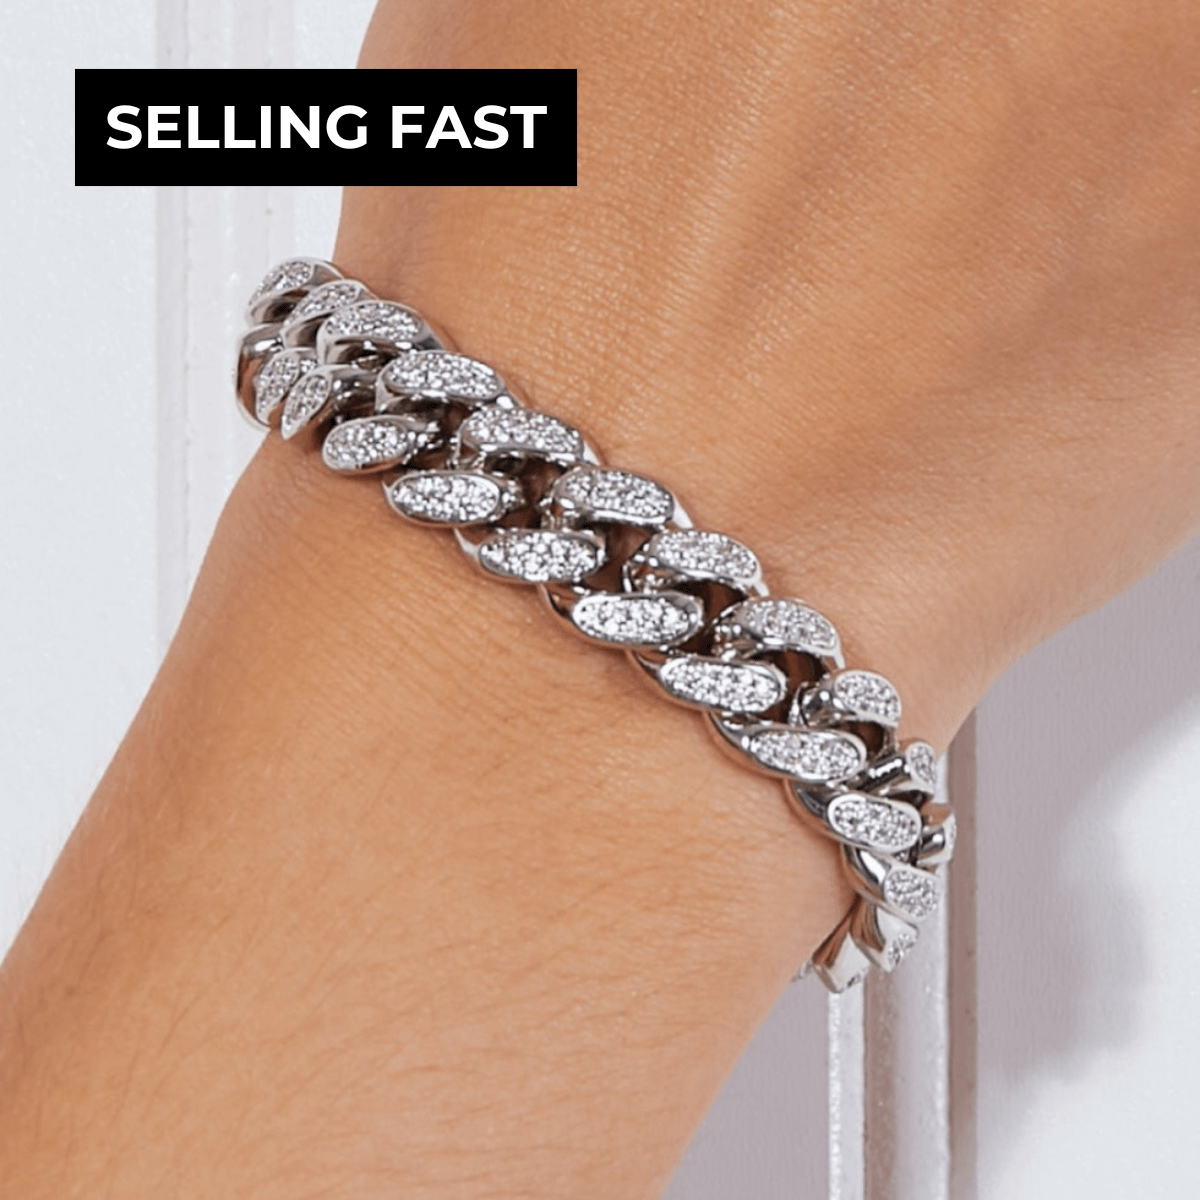 1# BEST Women's Silver Diamond Chunky Chain Bracelet Gift for Women, #1 Best Most Top Trendy Trending Silver Diamond Chunky Chain Bracelet for Women Gift, Mason & Madison Co.